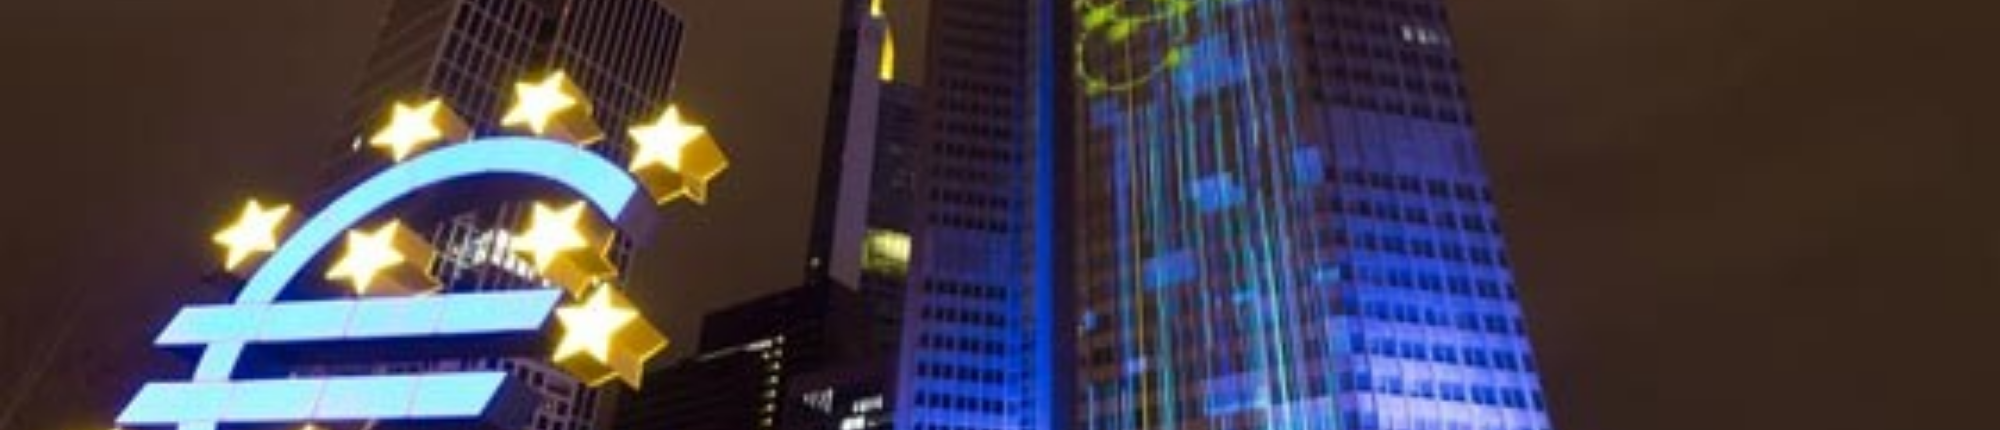 Legendarische dagtrip Frankfurt, op bezoek bij ECB